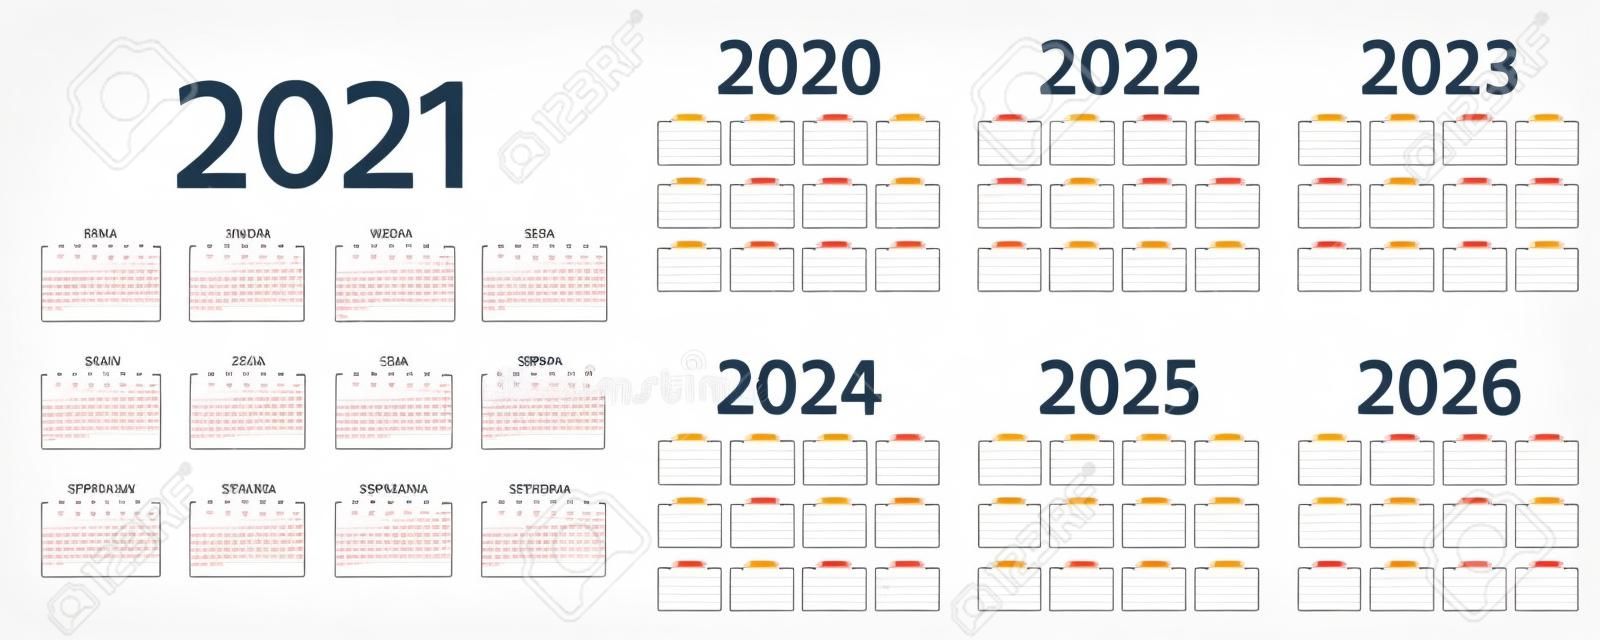 Calendário Espanhol 2021, 2022, 2023, 2024, 2025, 2026, 2020 anos. Vector. A semana começa segunda-feira. Modelo de calendário de Espanha. Organizador de papelaria anual em design simples. Ilustração simples.